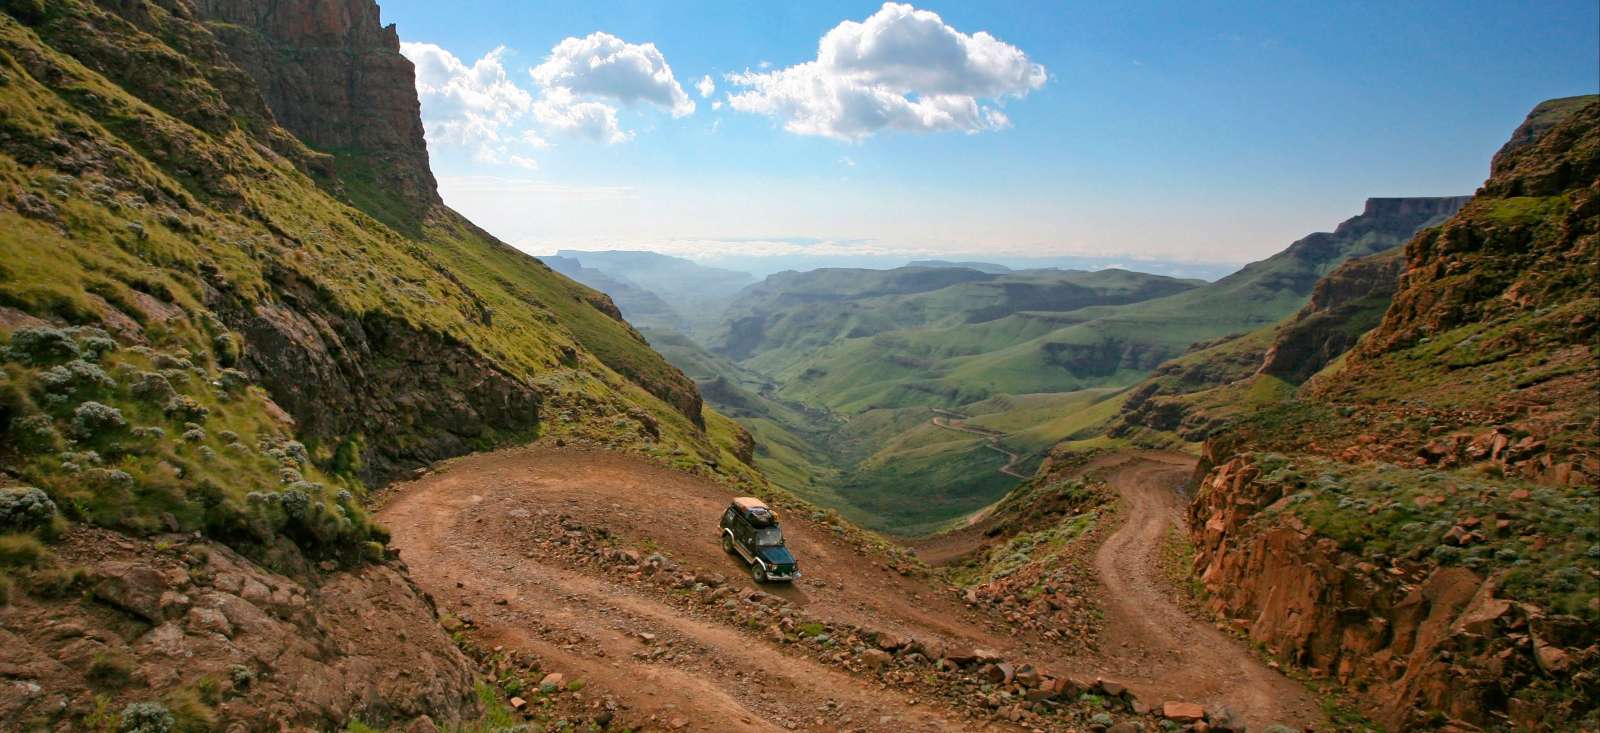 Voyage roadtrip - Afrique du Sud : Royaumes, randonnées et safaris sud-africains